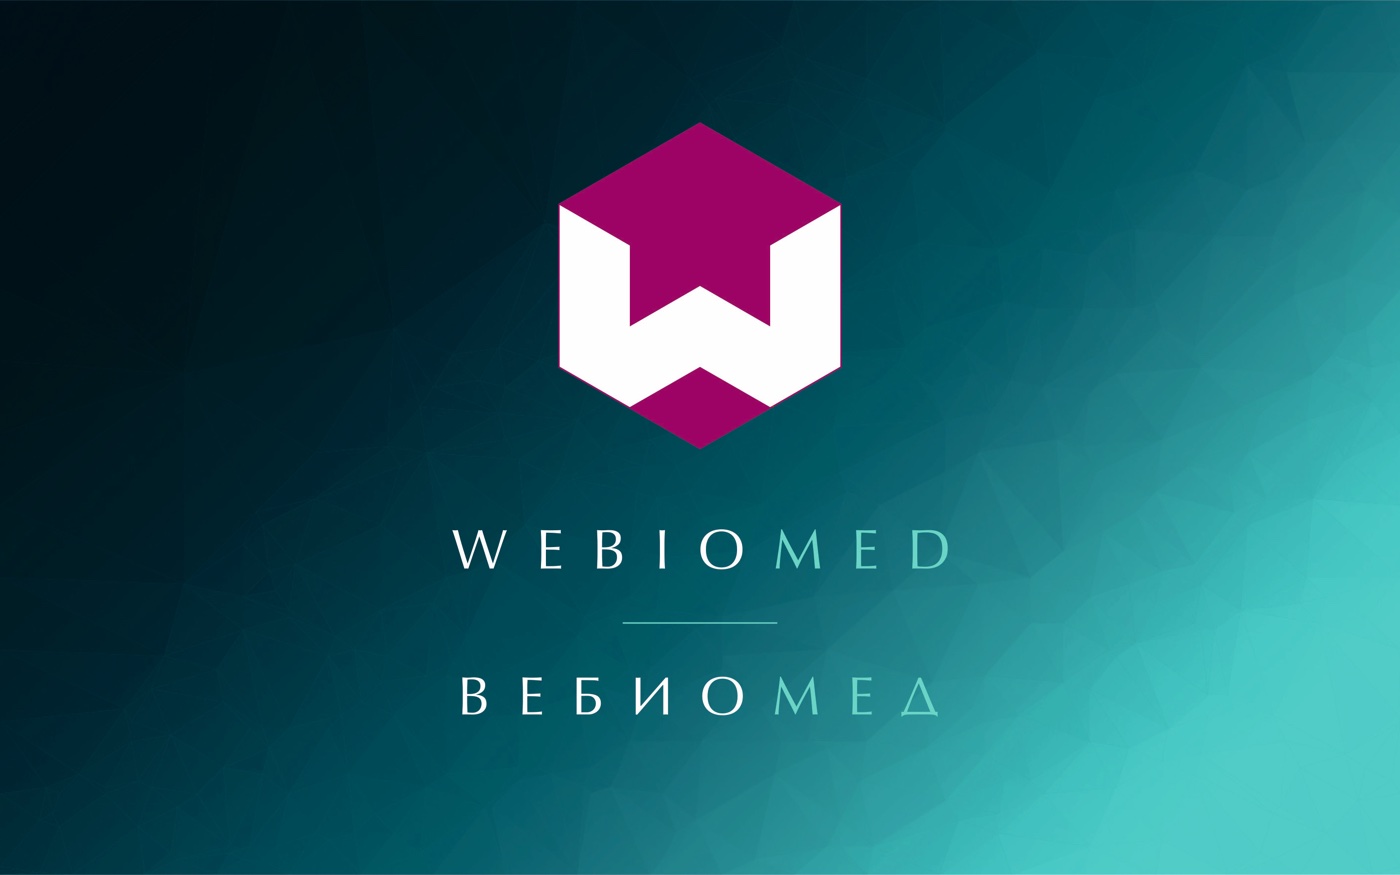 Система поддержки принятия врачебных решений Webiomed, использующая в том числе методы искусственного интеллекта